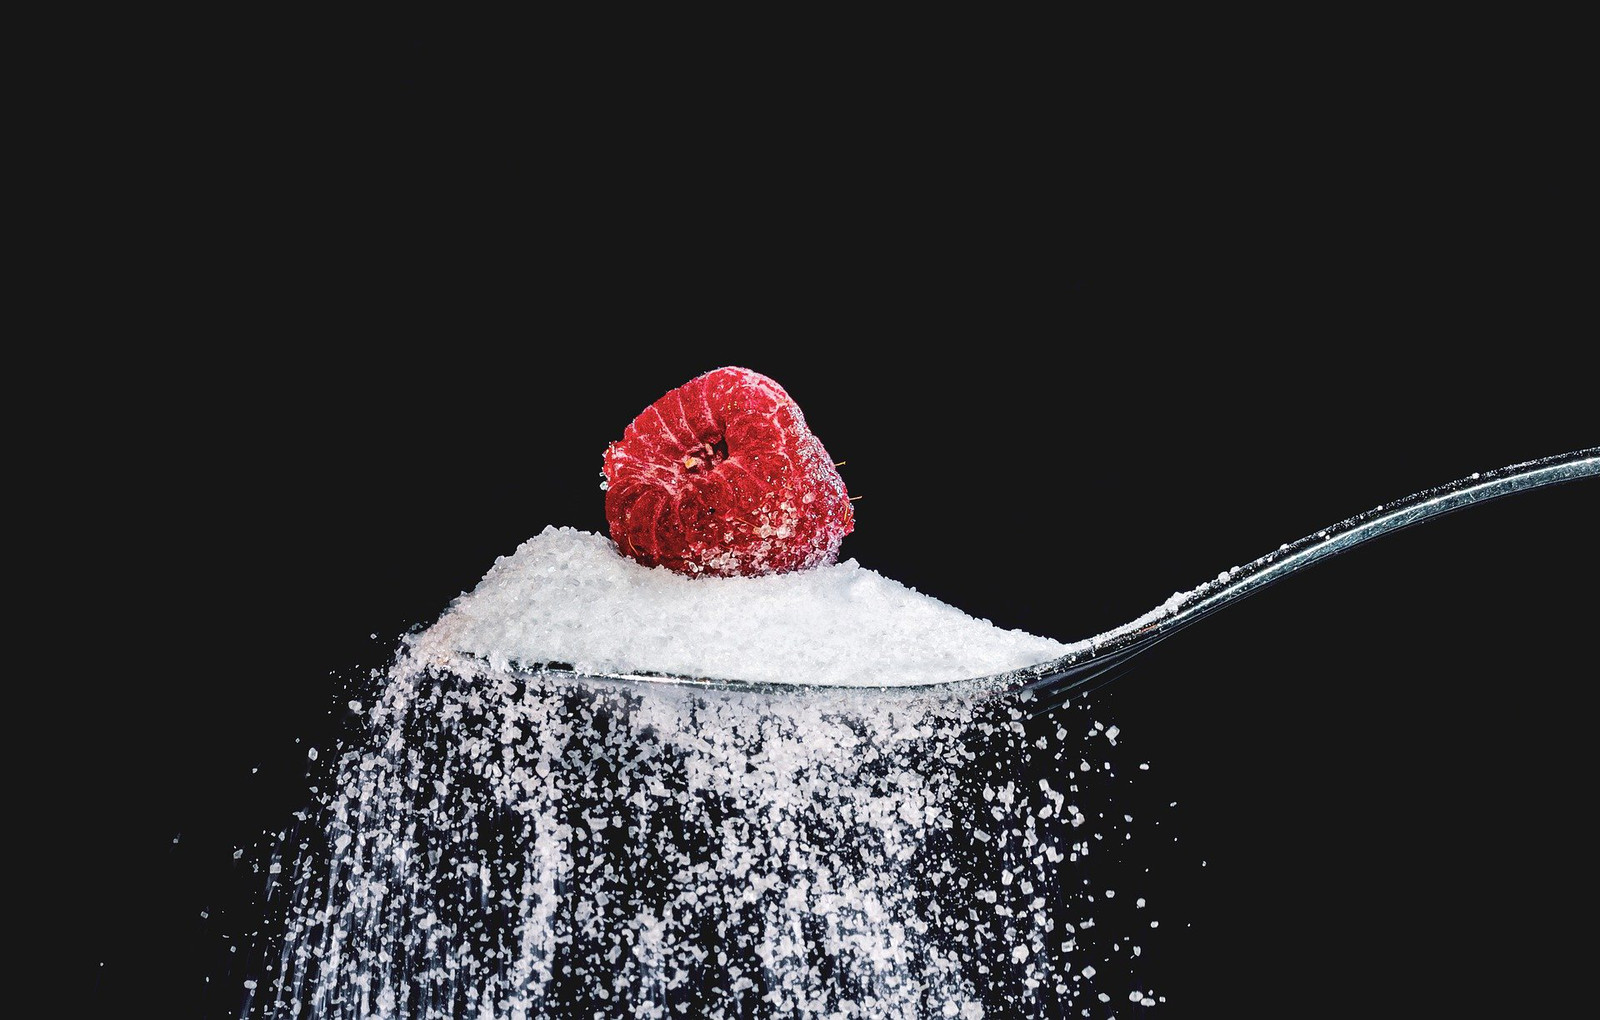 Sulit Mengurangi Asupan Gula? Ikuti Hal Berikut Ini